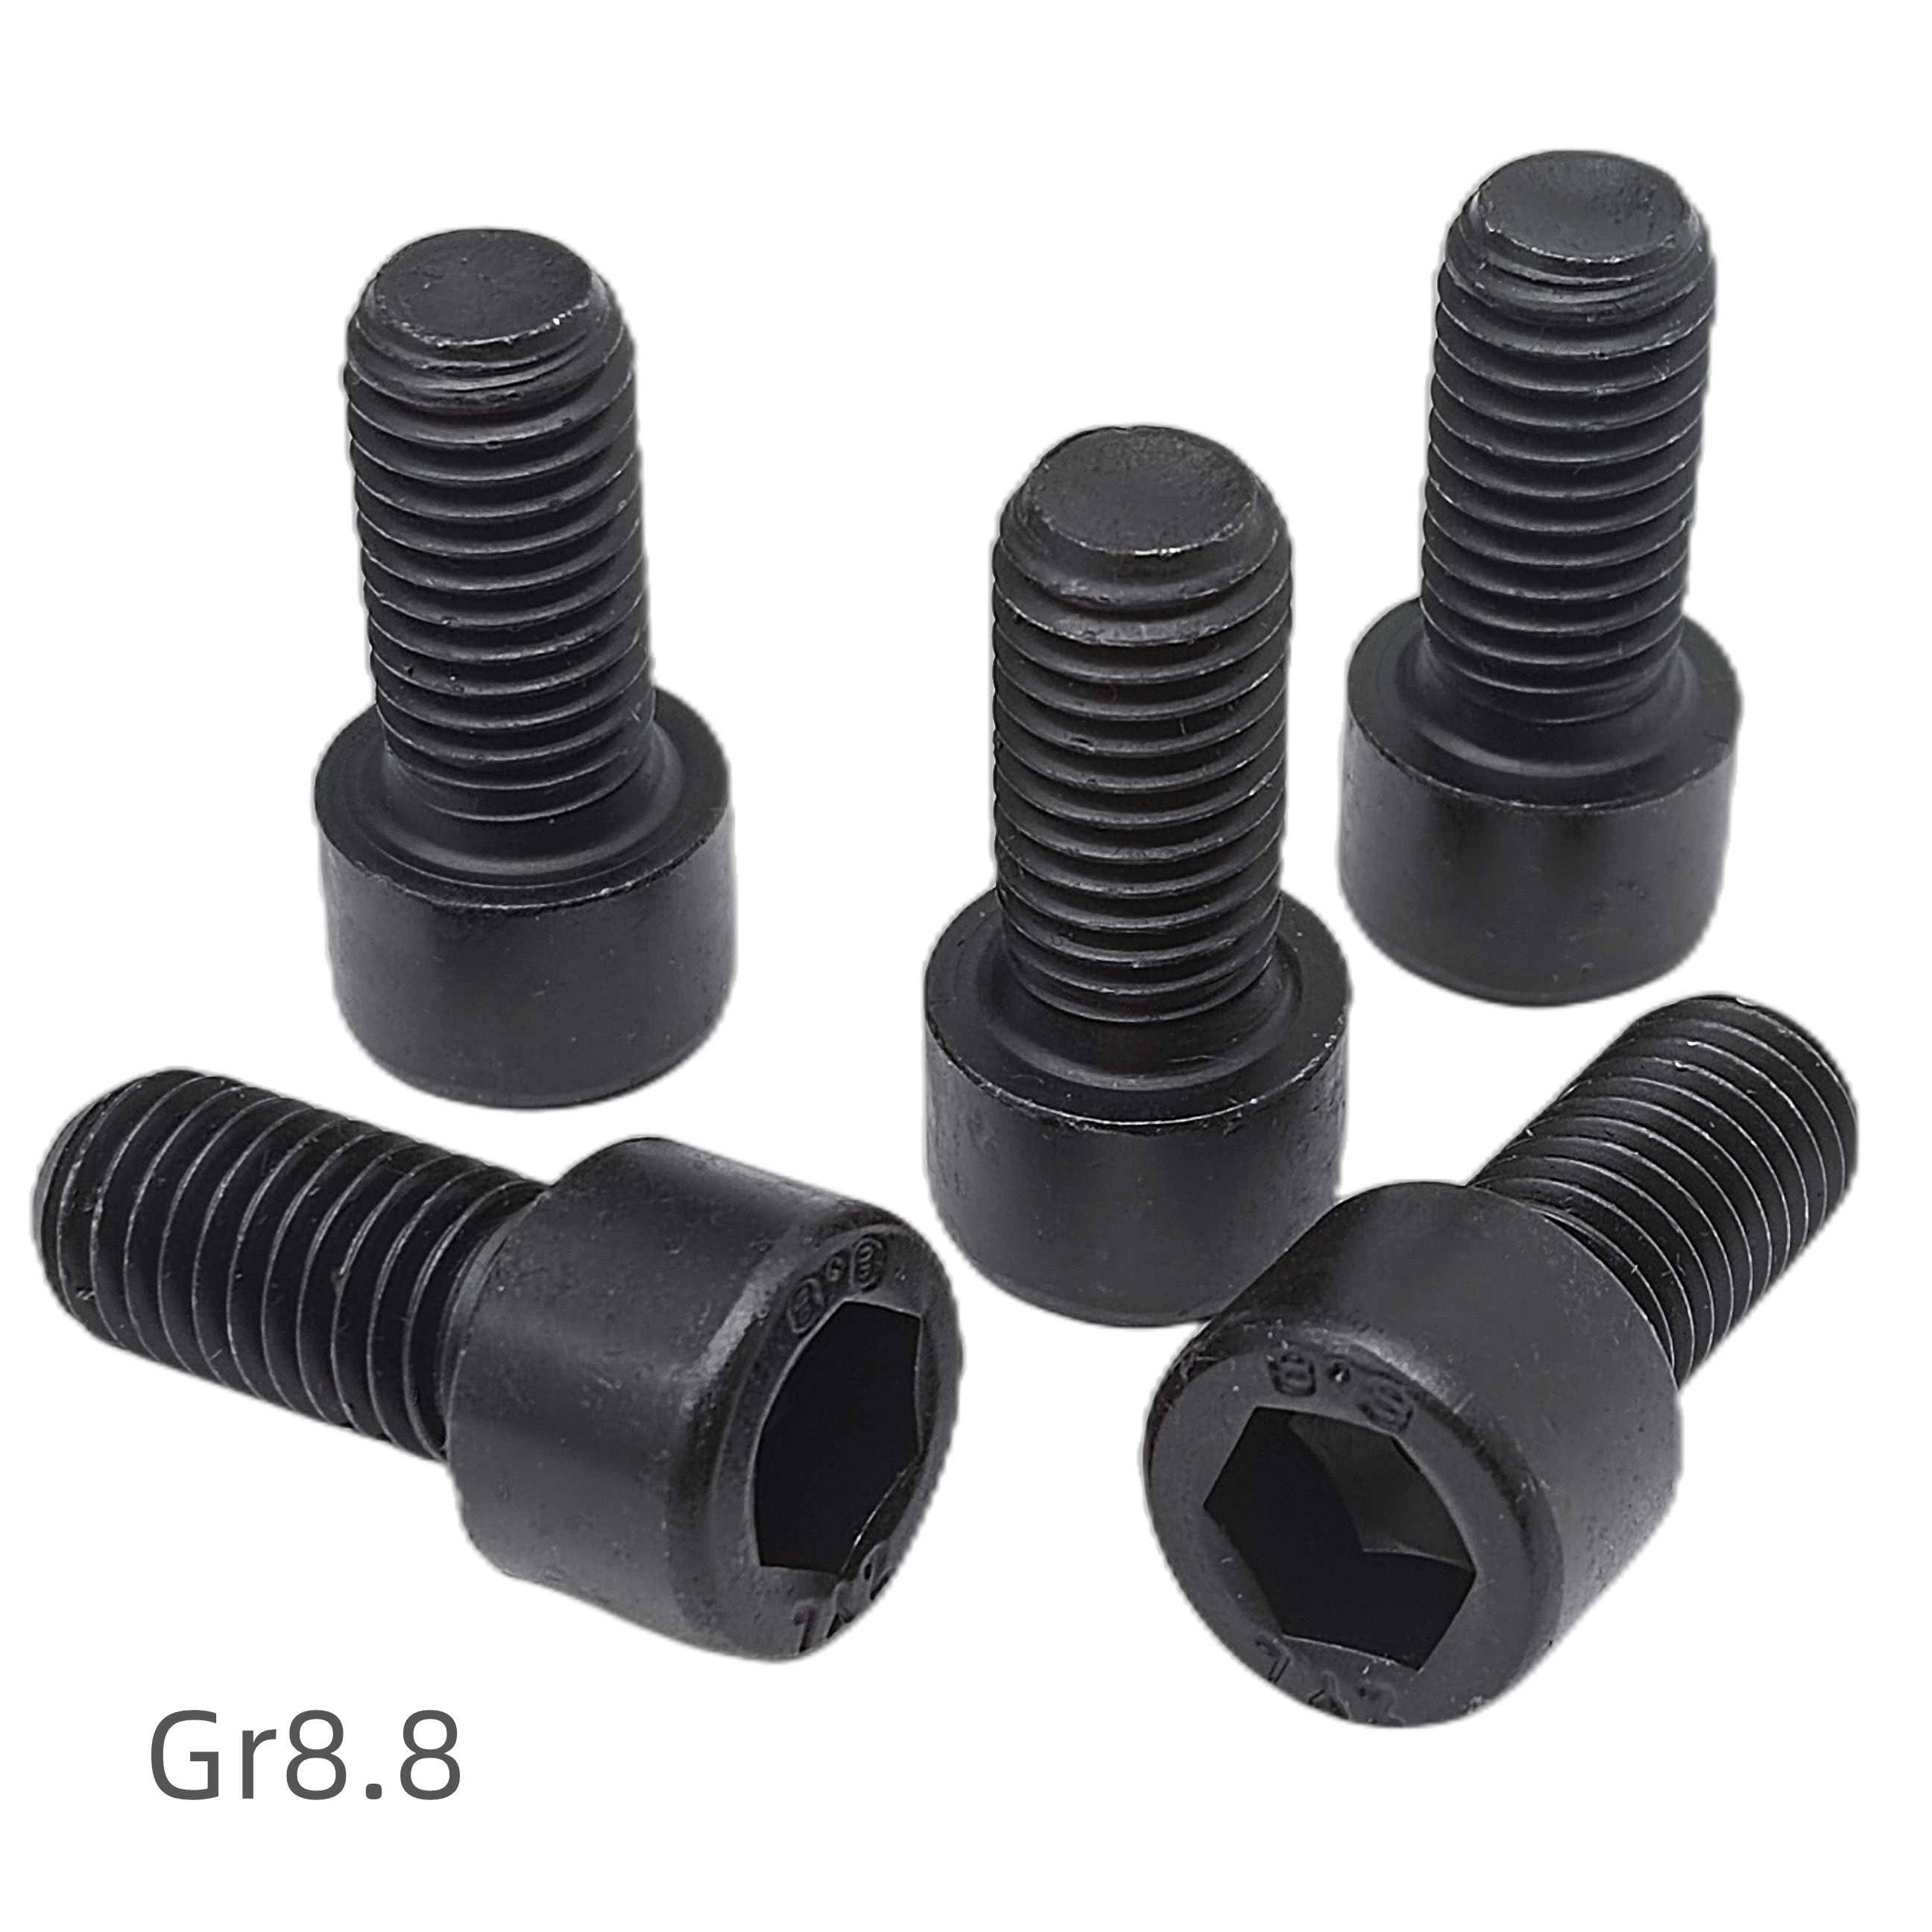 Hexagonal socket cap screws/bolts full series